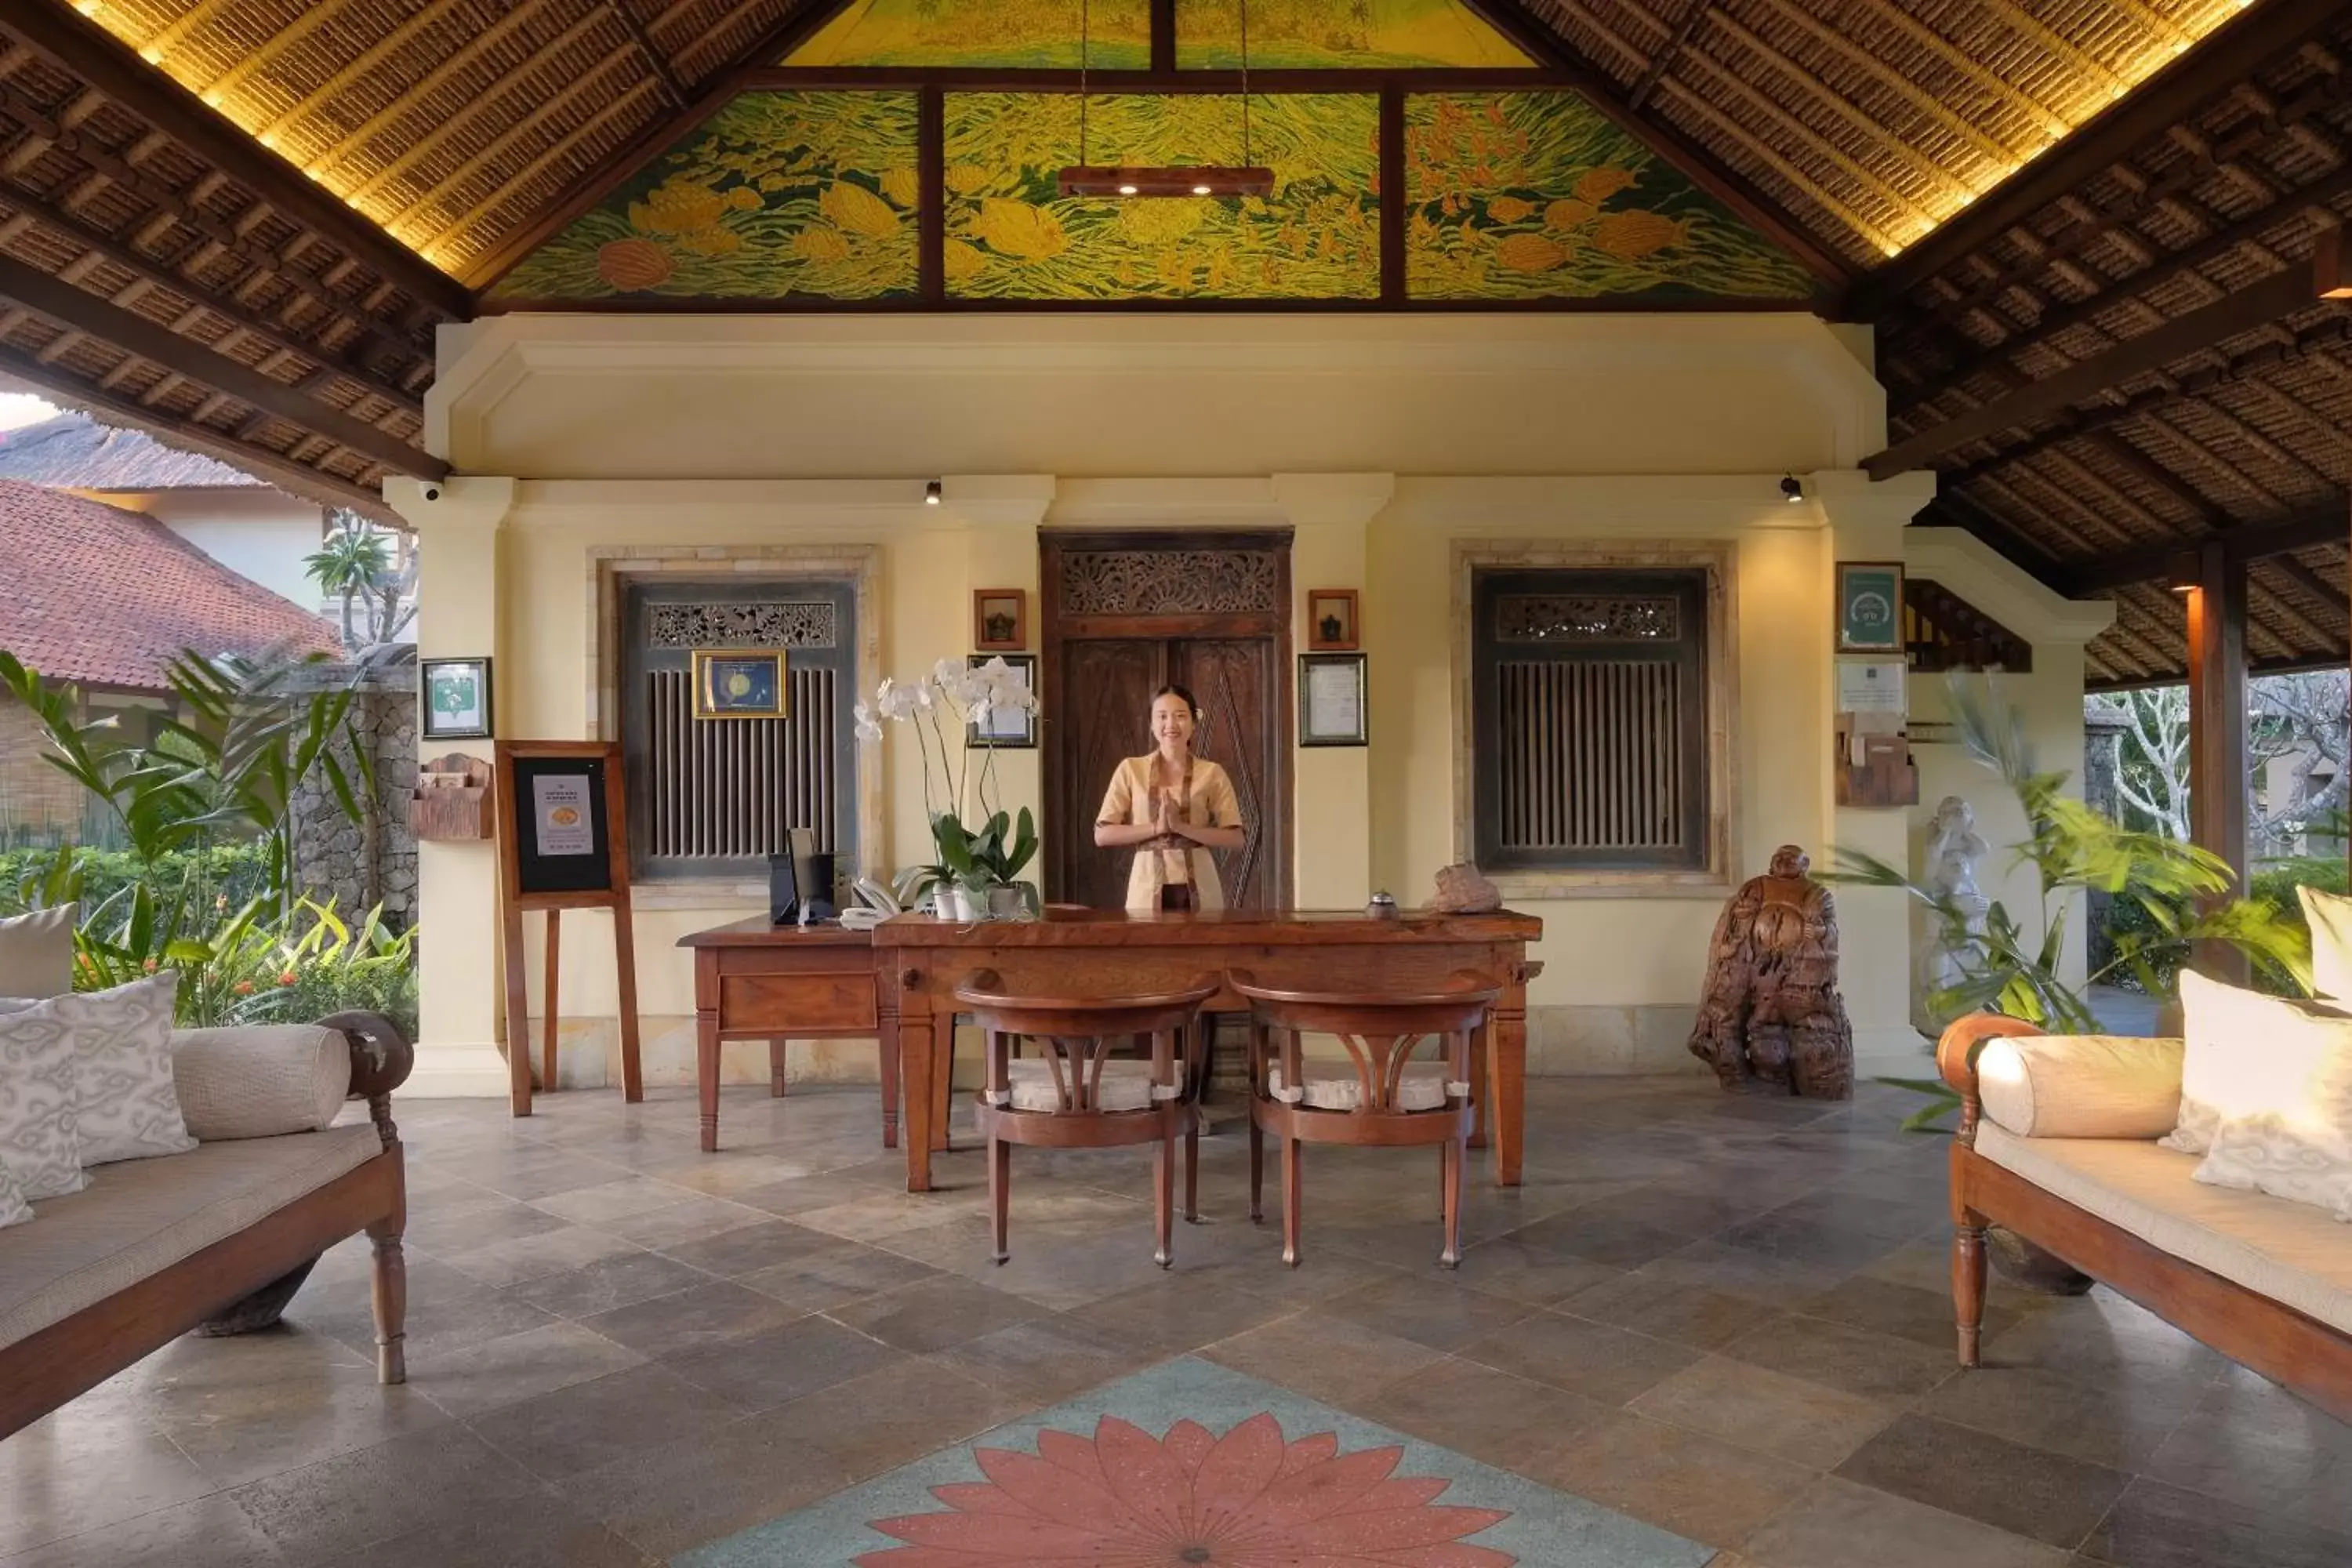 Lobby or reception in Mimpi Resort Menjangan